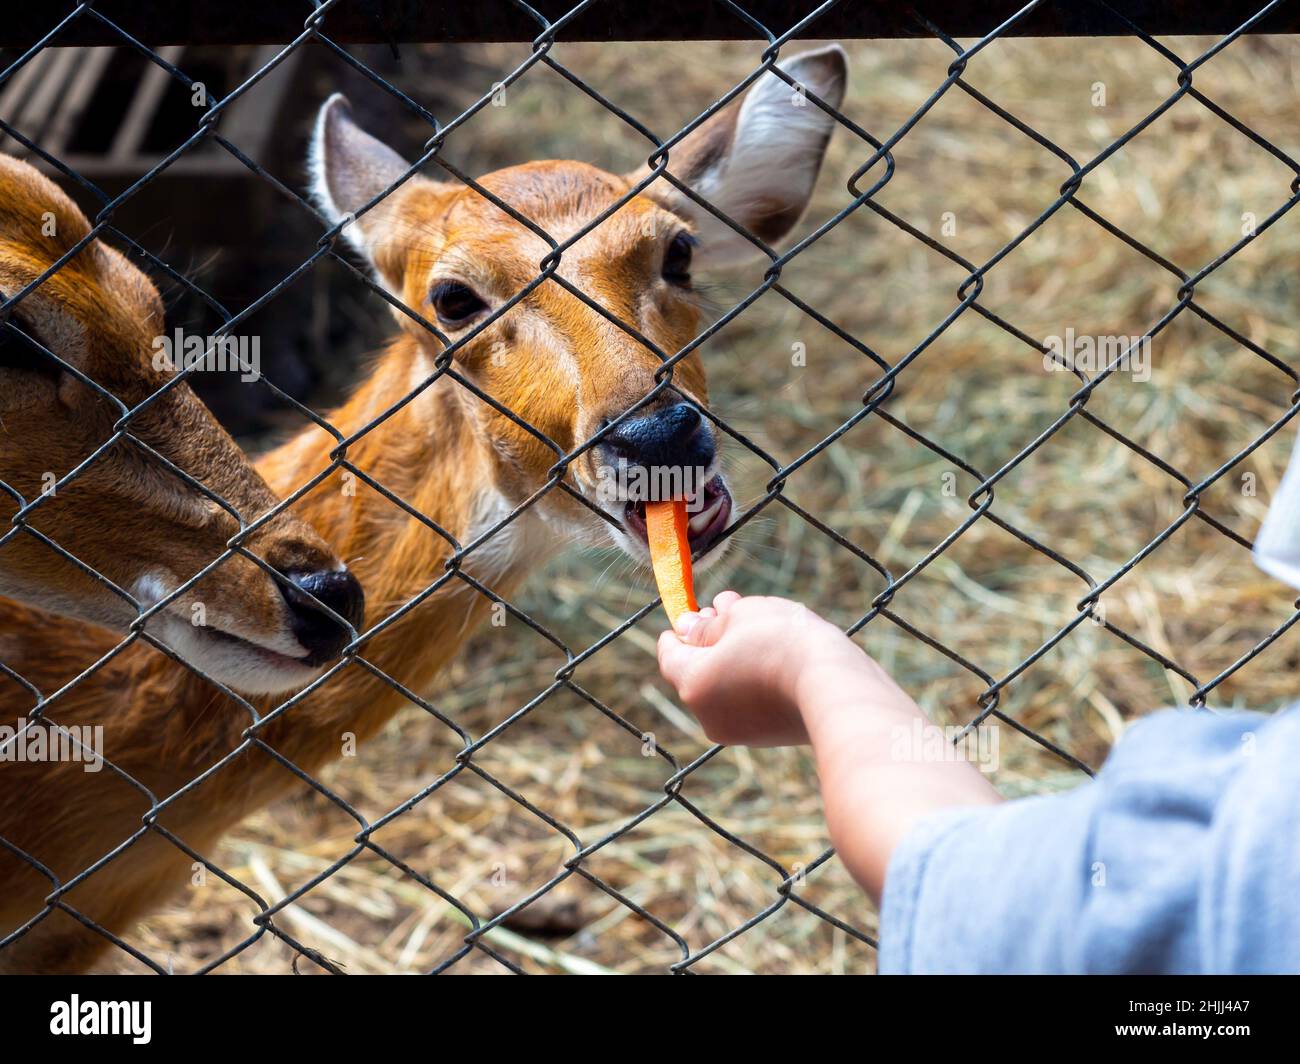 Füttern der Hirsche im Zoo. Der Hirsch im Zaun frisst ein Karottenstück, das von der Hand des Kindes gefüttert wird. Stockfoto